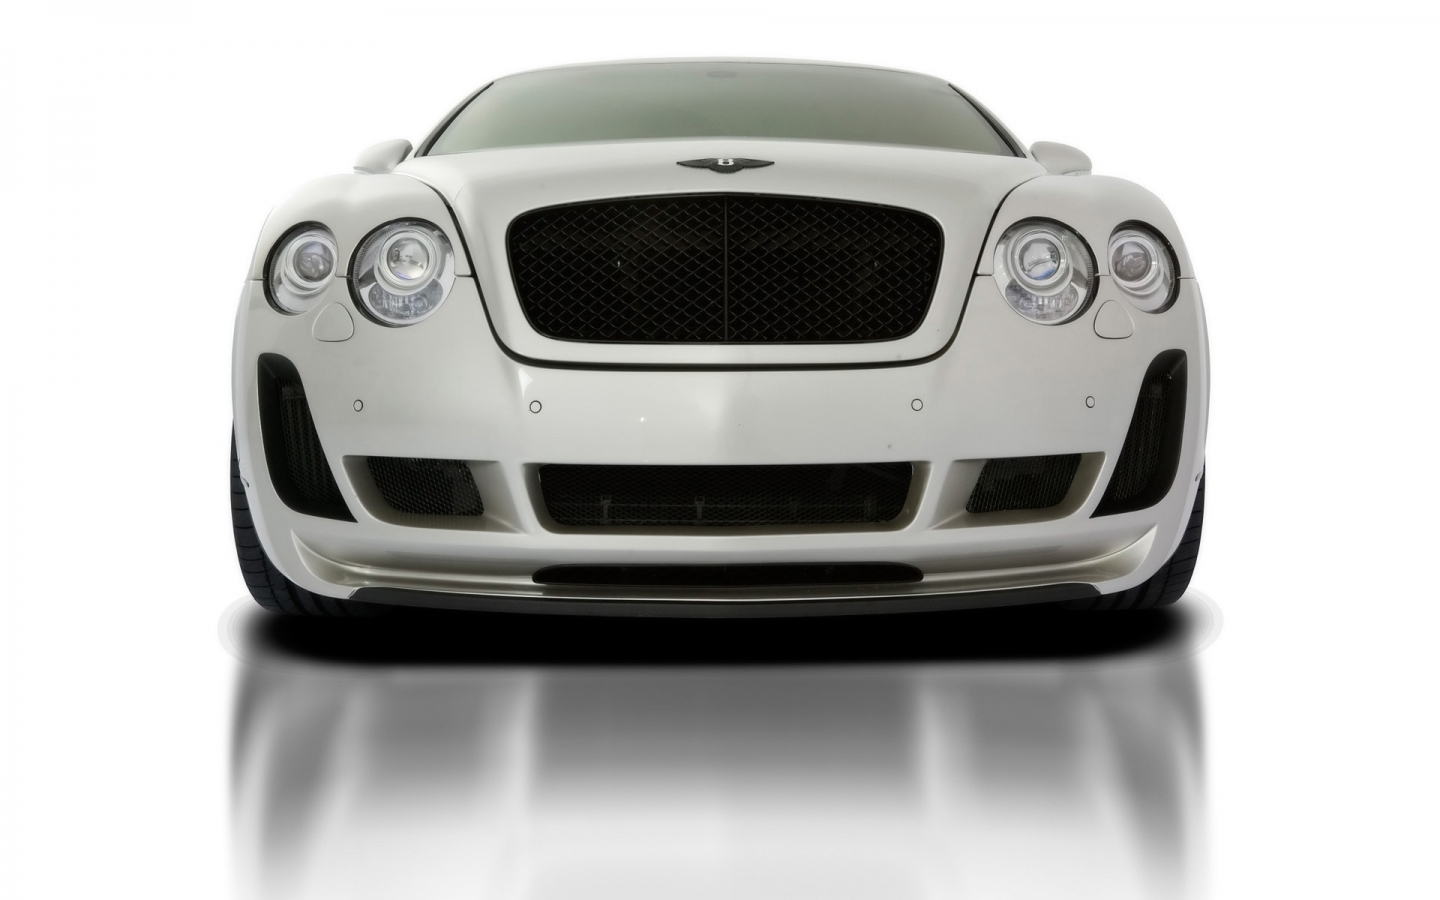 2010 Vorsteiner Bentley Continental GT BR9 Edition for 1440 x 900 widescreen resolution